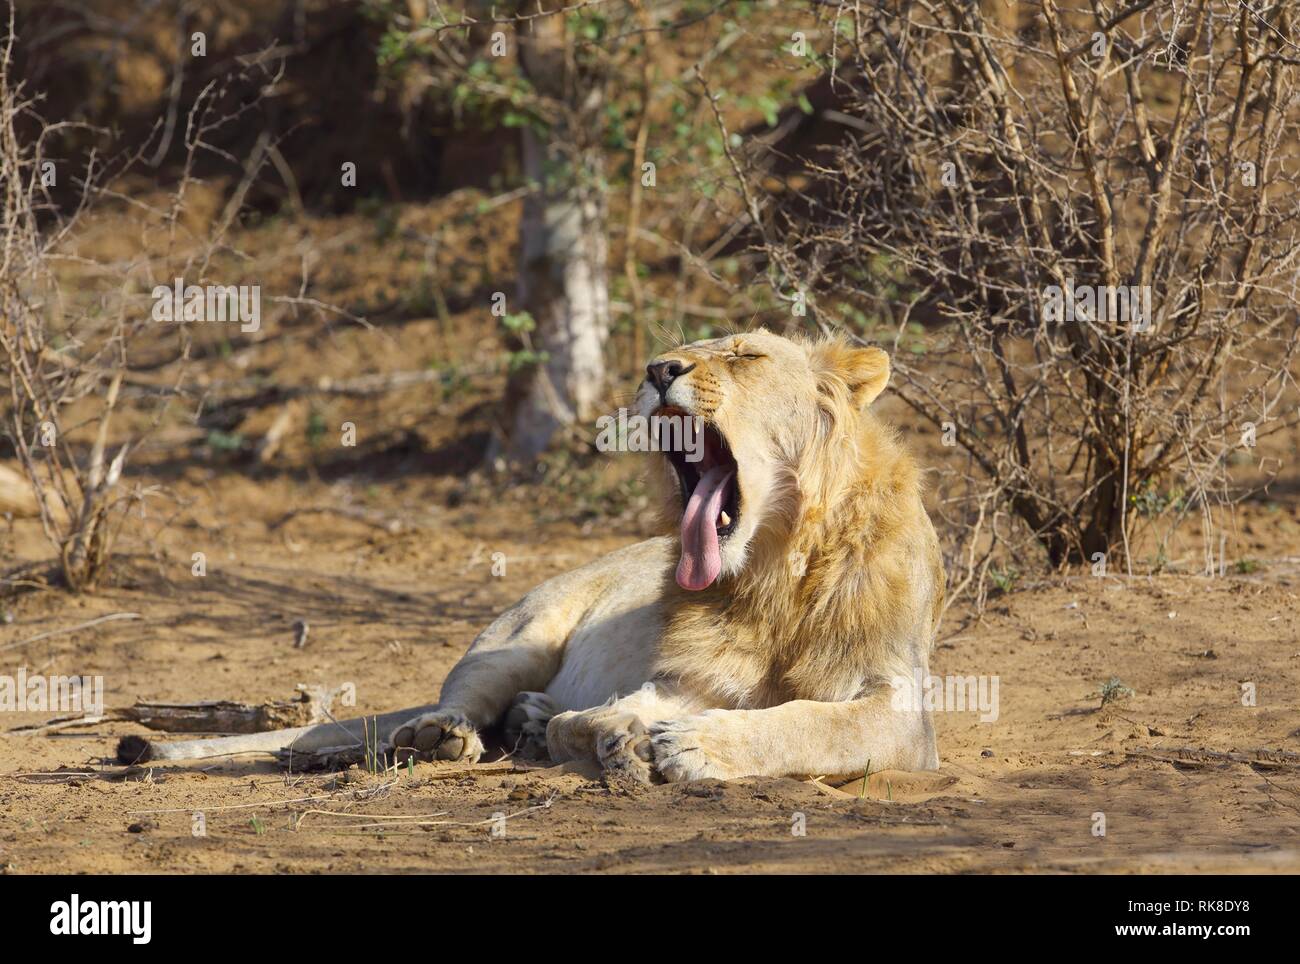 Auf dem Boden der Savanne, ein männlicher Löwe gähnt seine kraftvollen Zähne Stockfoto